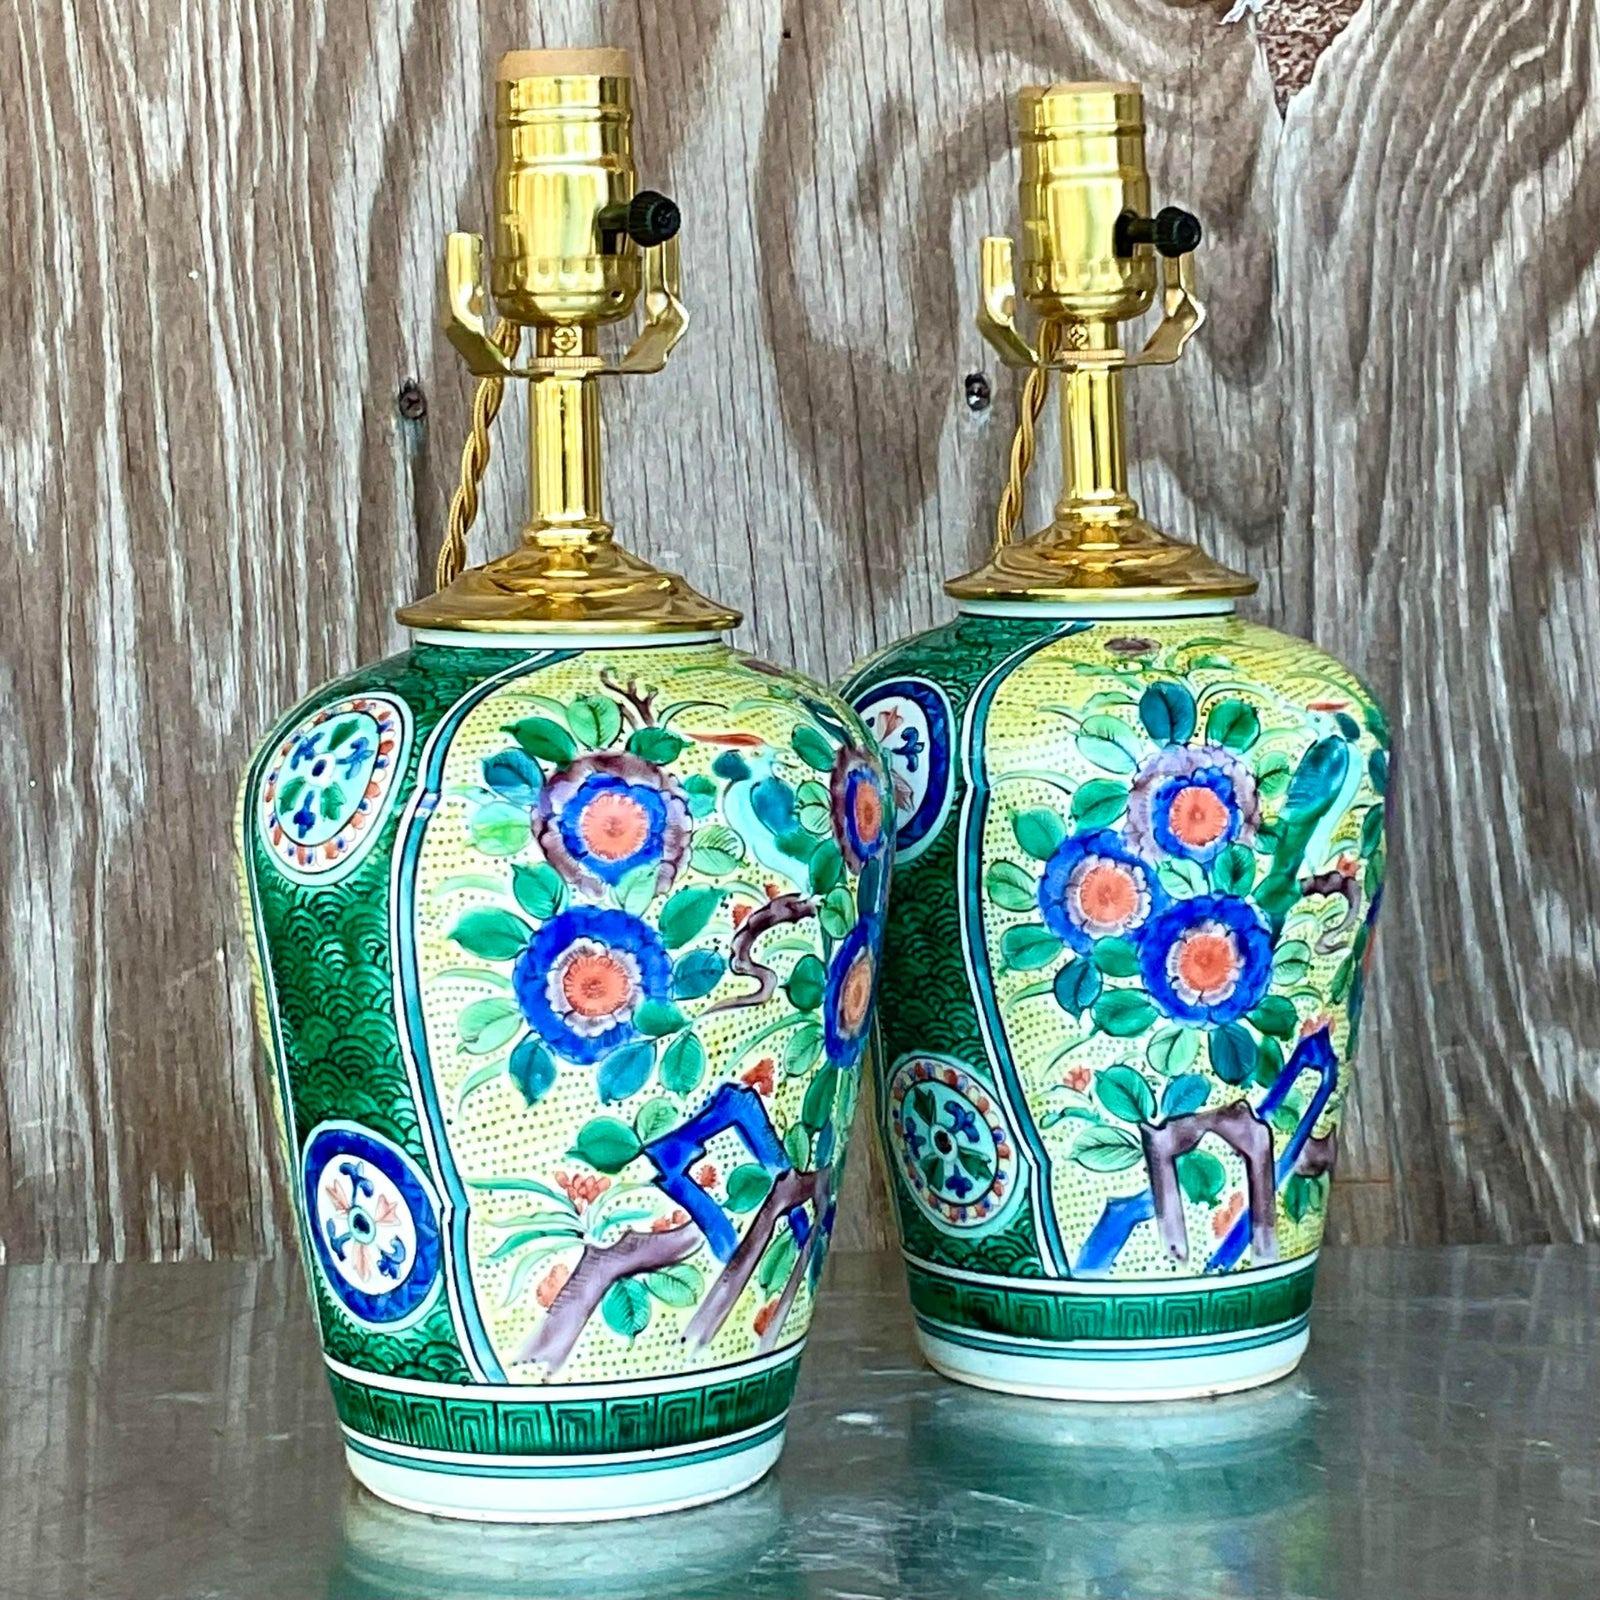 Une fabuleuse paire de lampes asiatiques vintage. Un motif floral chic dans un pot de gingembre en céramique émaillée. Entièrement restauré avec tous les nouveaux câbles et accessoires. Acquis d'une propriété de Palm Beach.